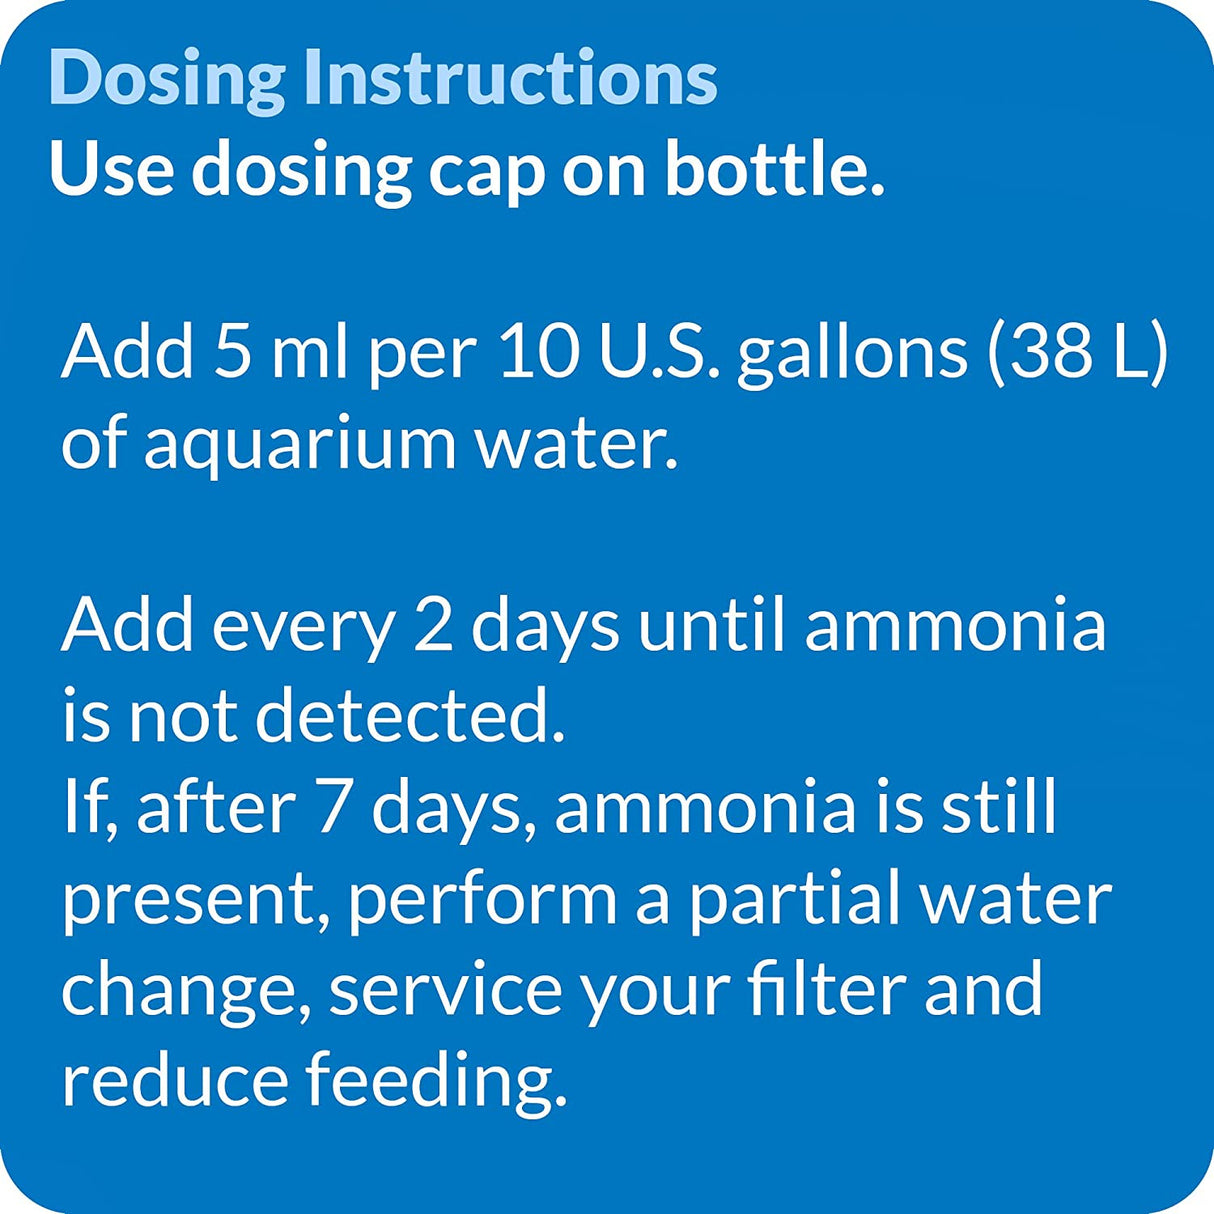 4 oz API Ammo Lock Detoxifies Aquarium Ammonia